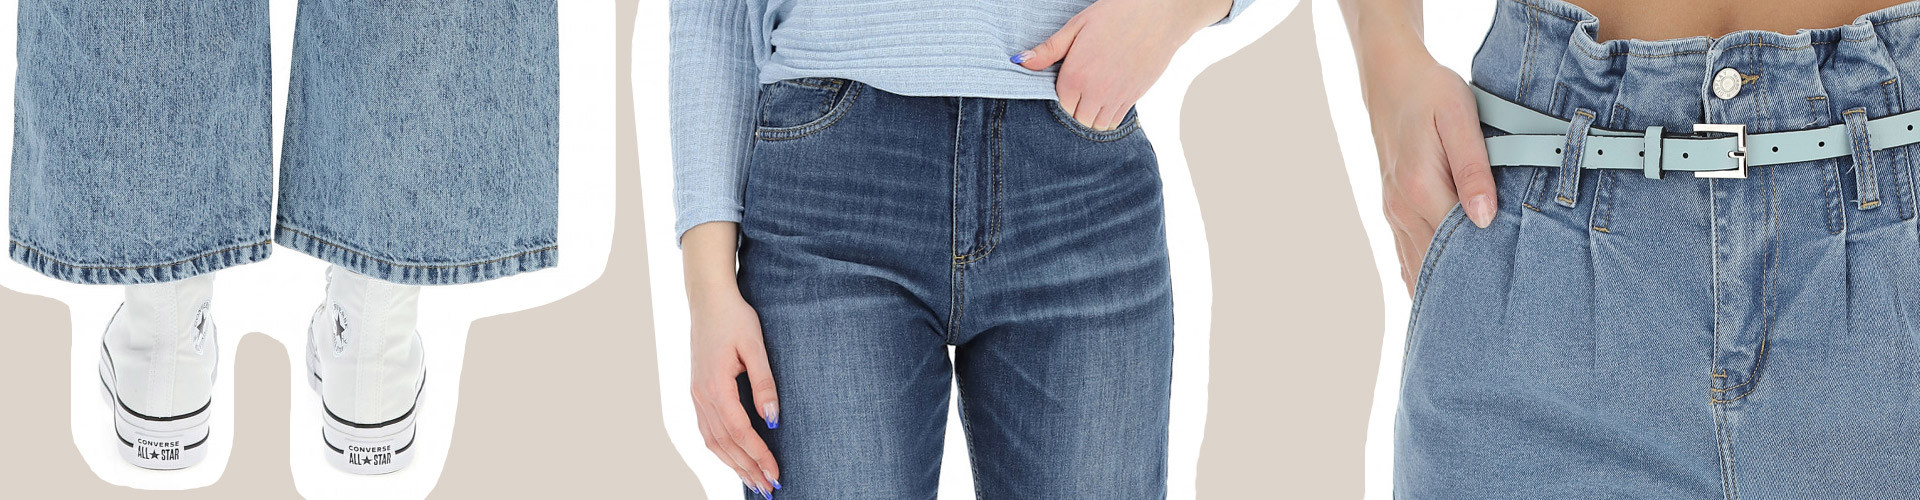 Allargare pantalone classico o jeans